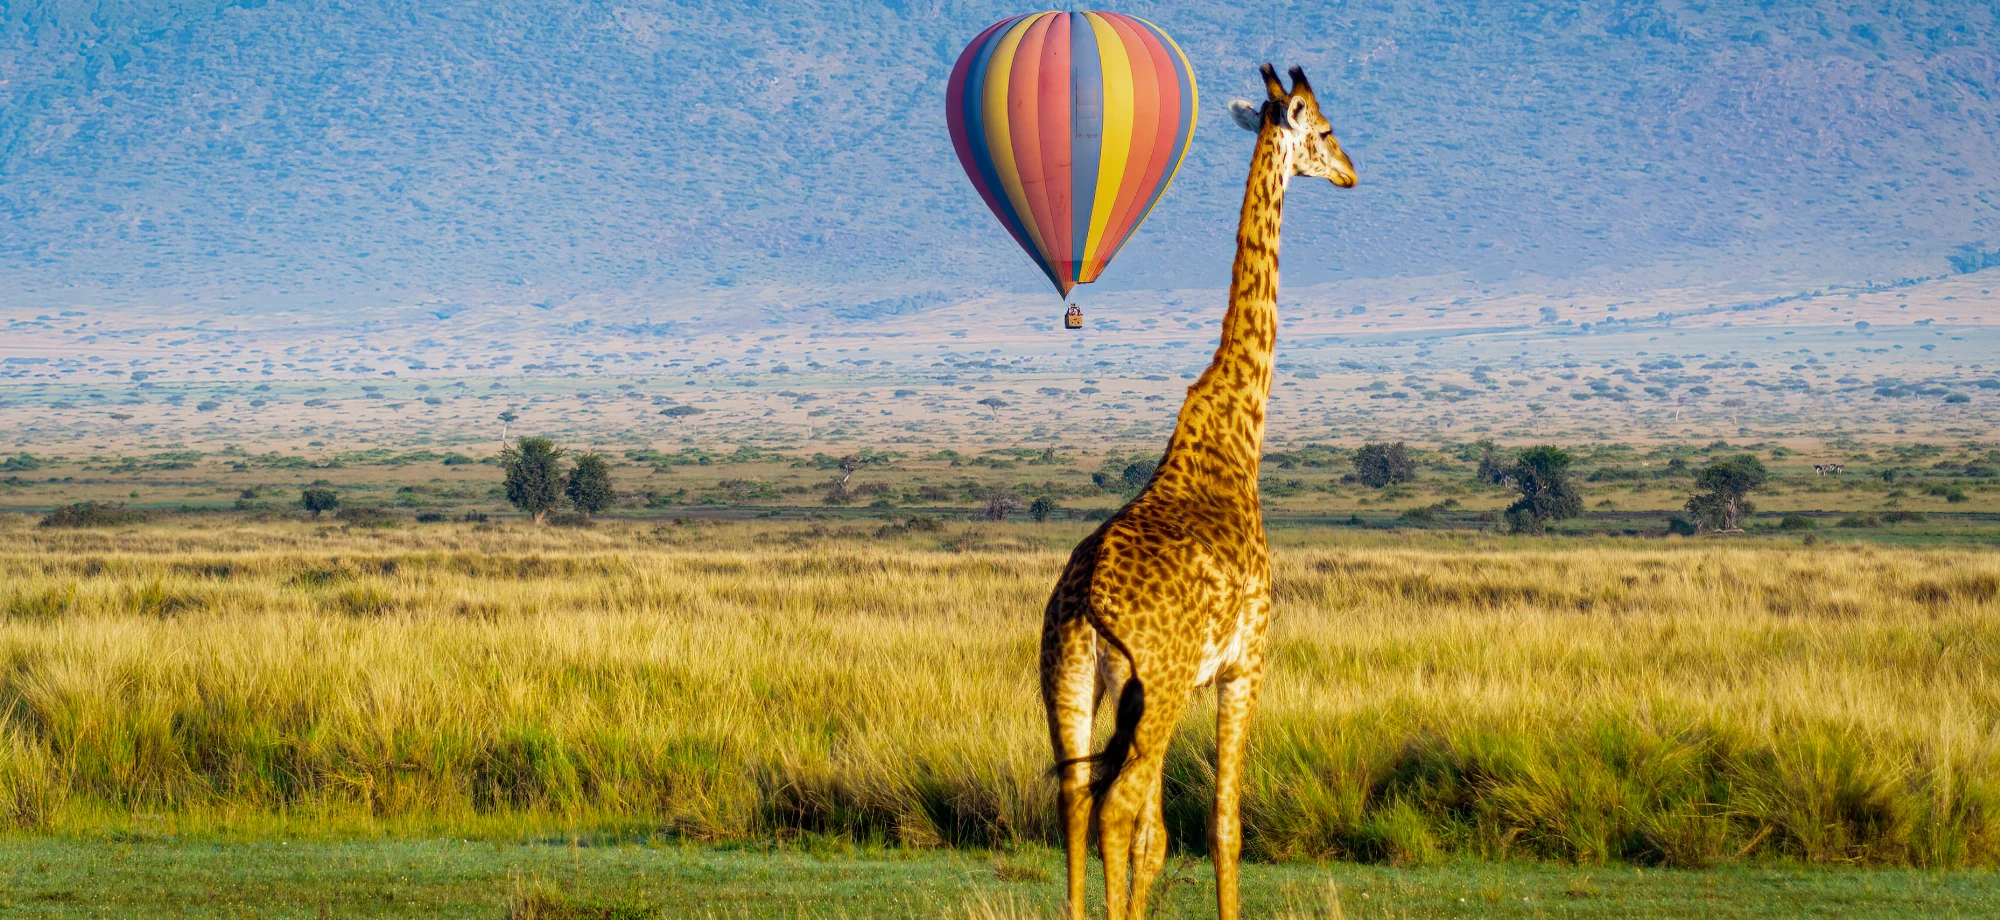 A giraffe stands ahead of a colourful hot air balloon during the daytime on the Masai Mara plains.